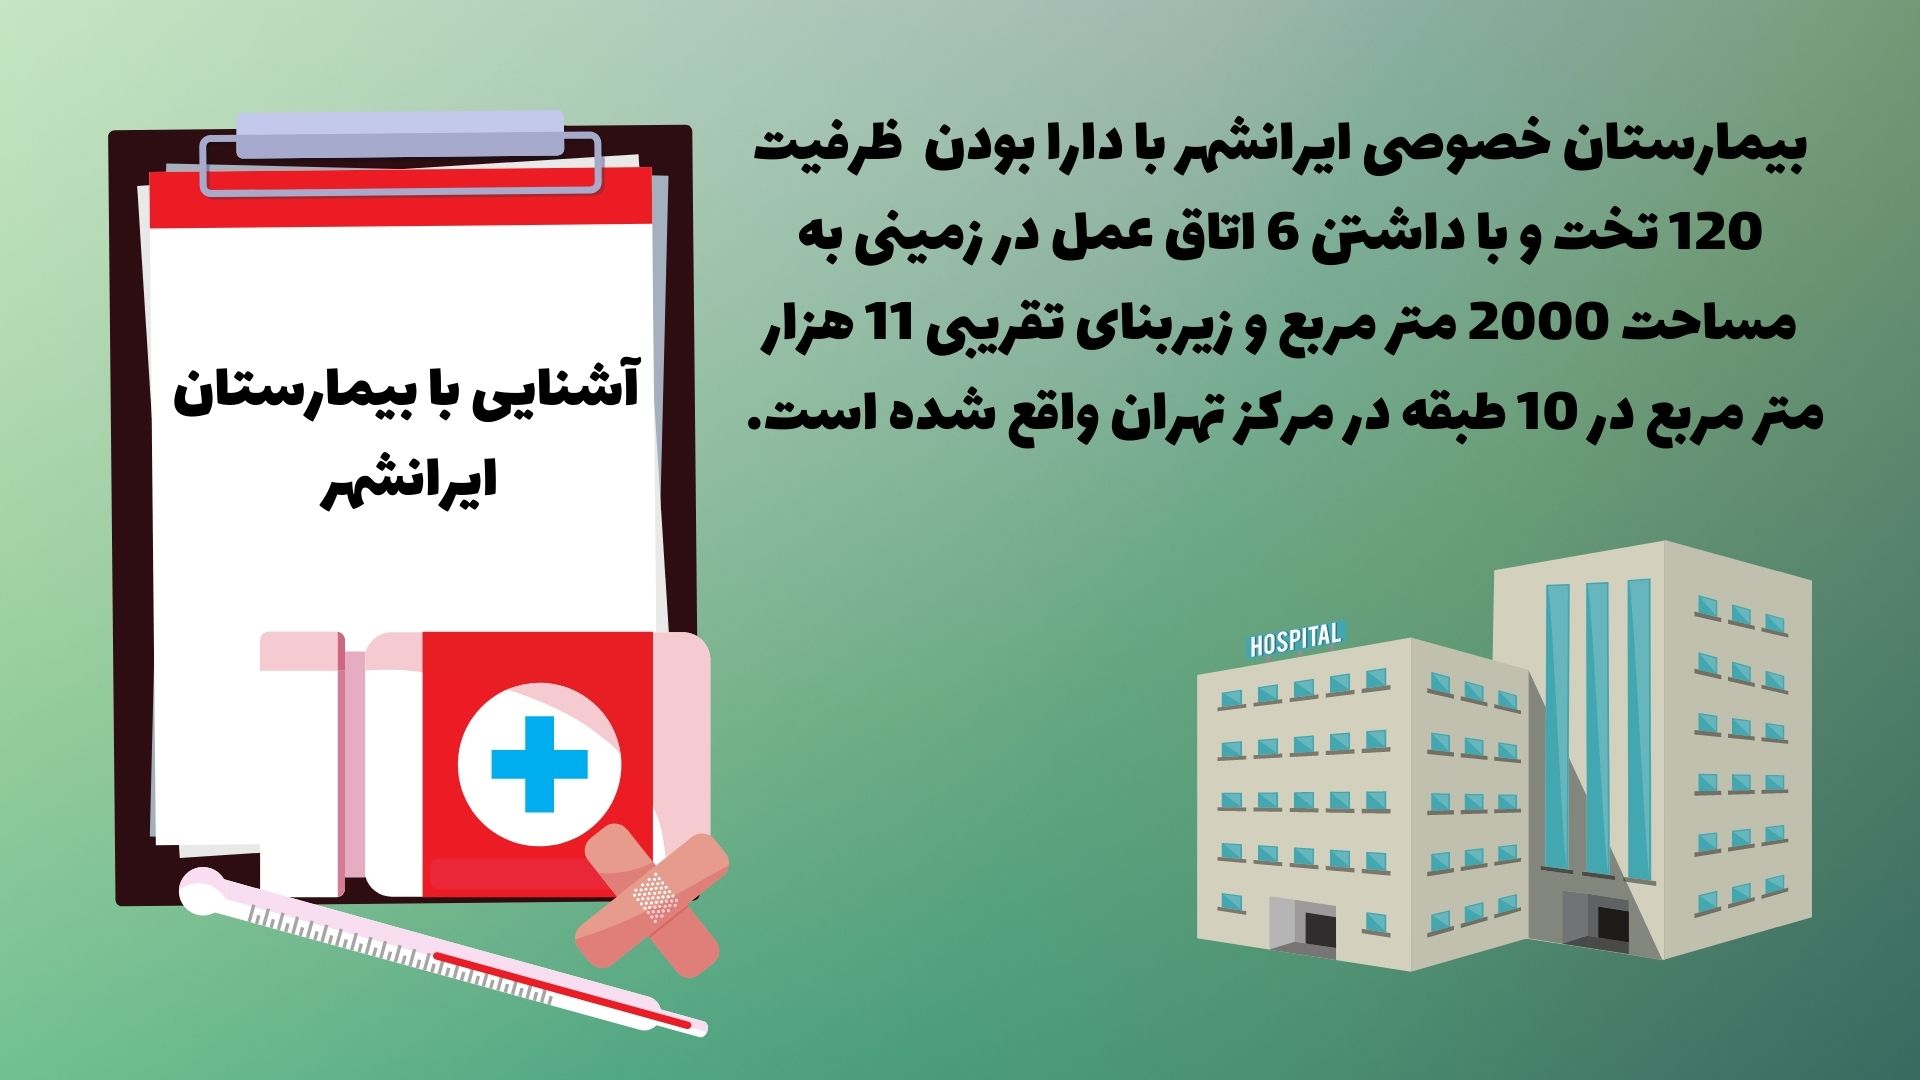 آشنایی با بیمارستان ایرانشهر